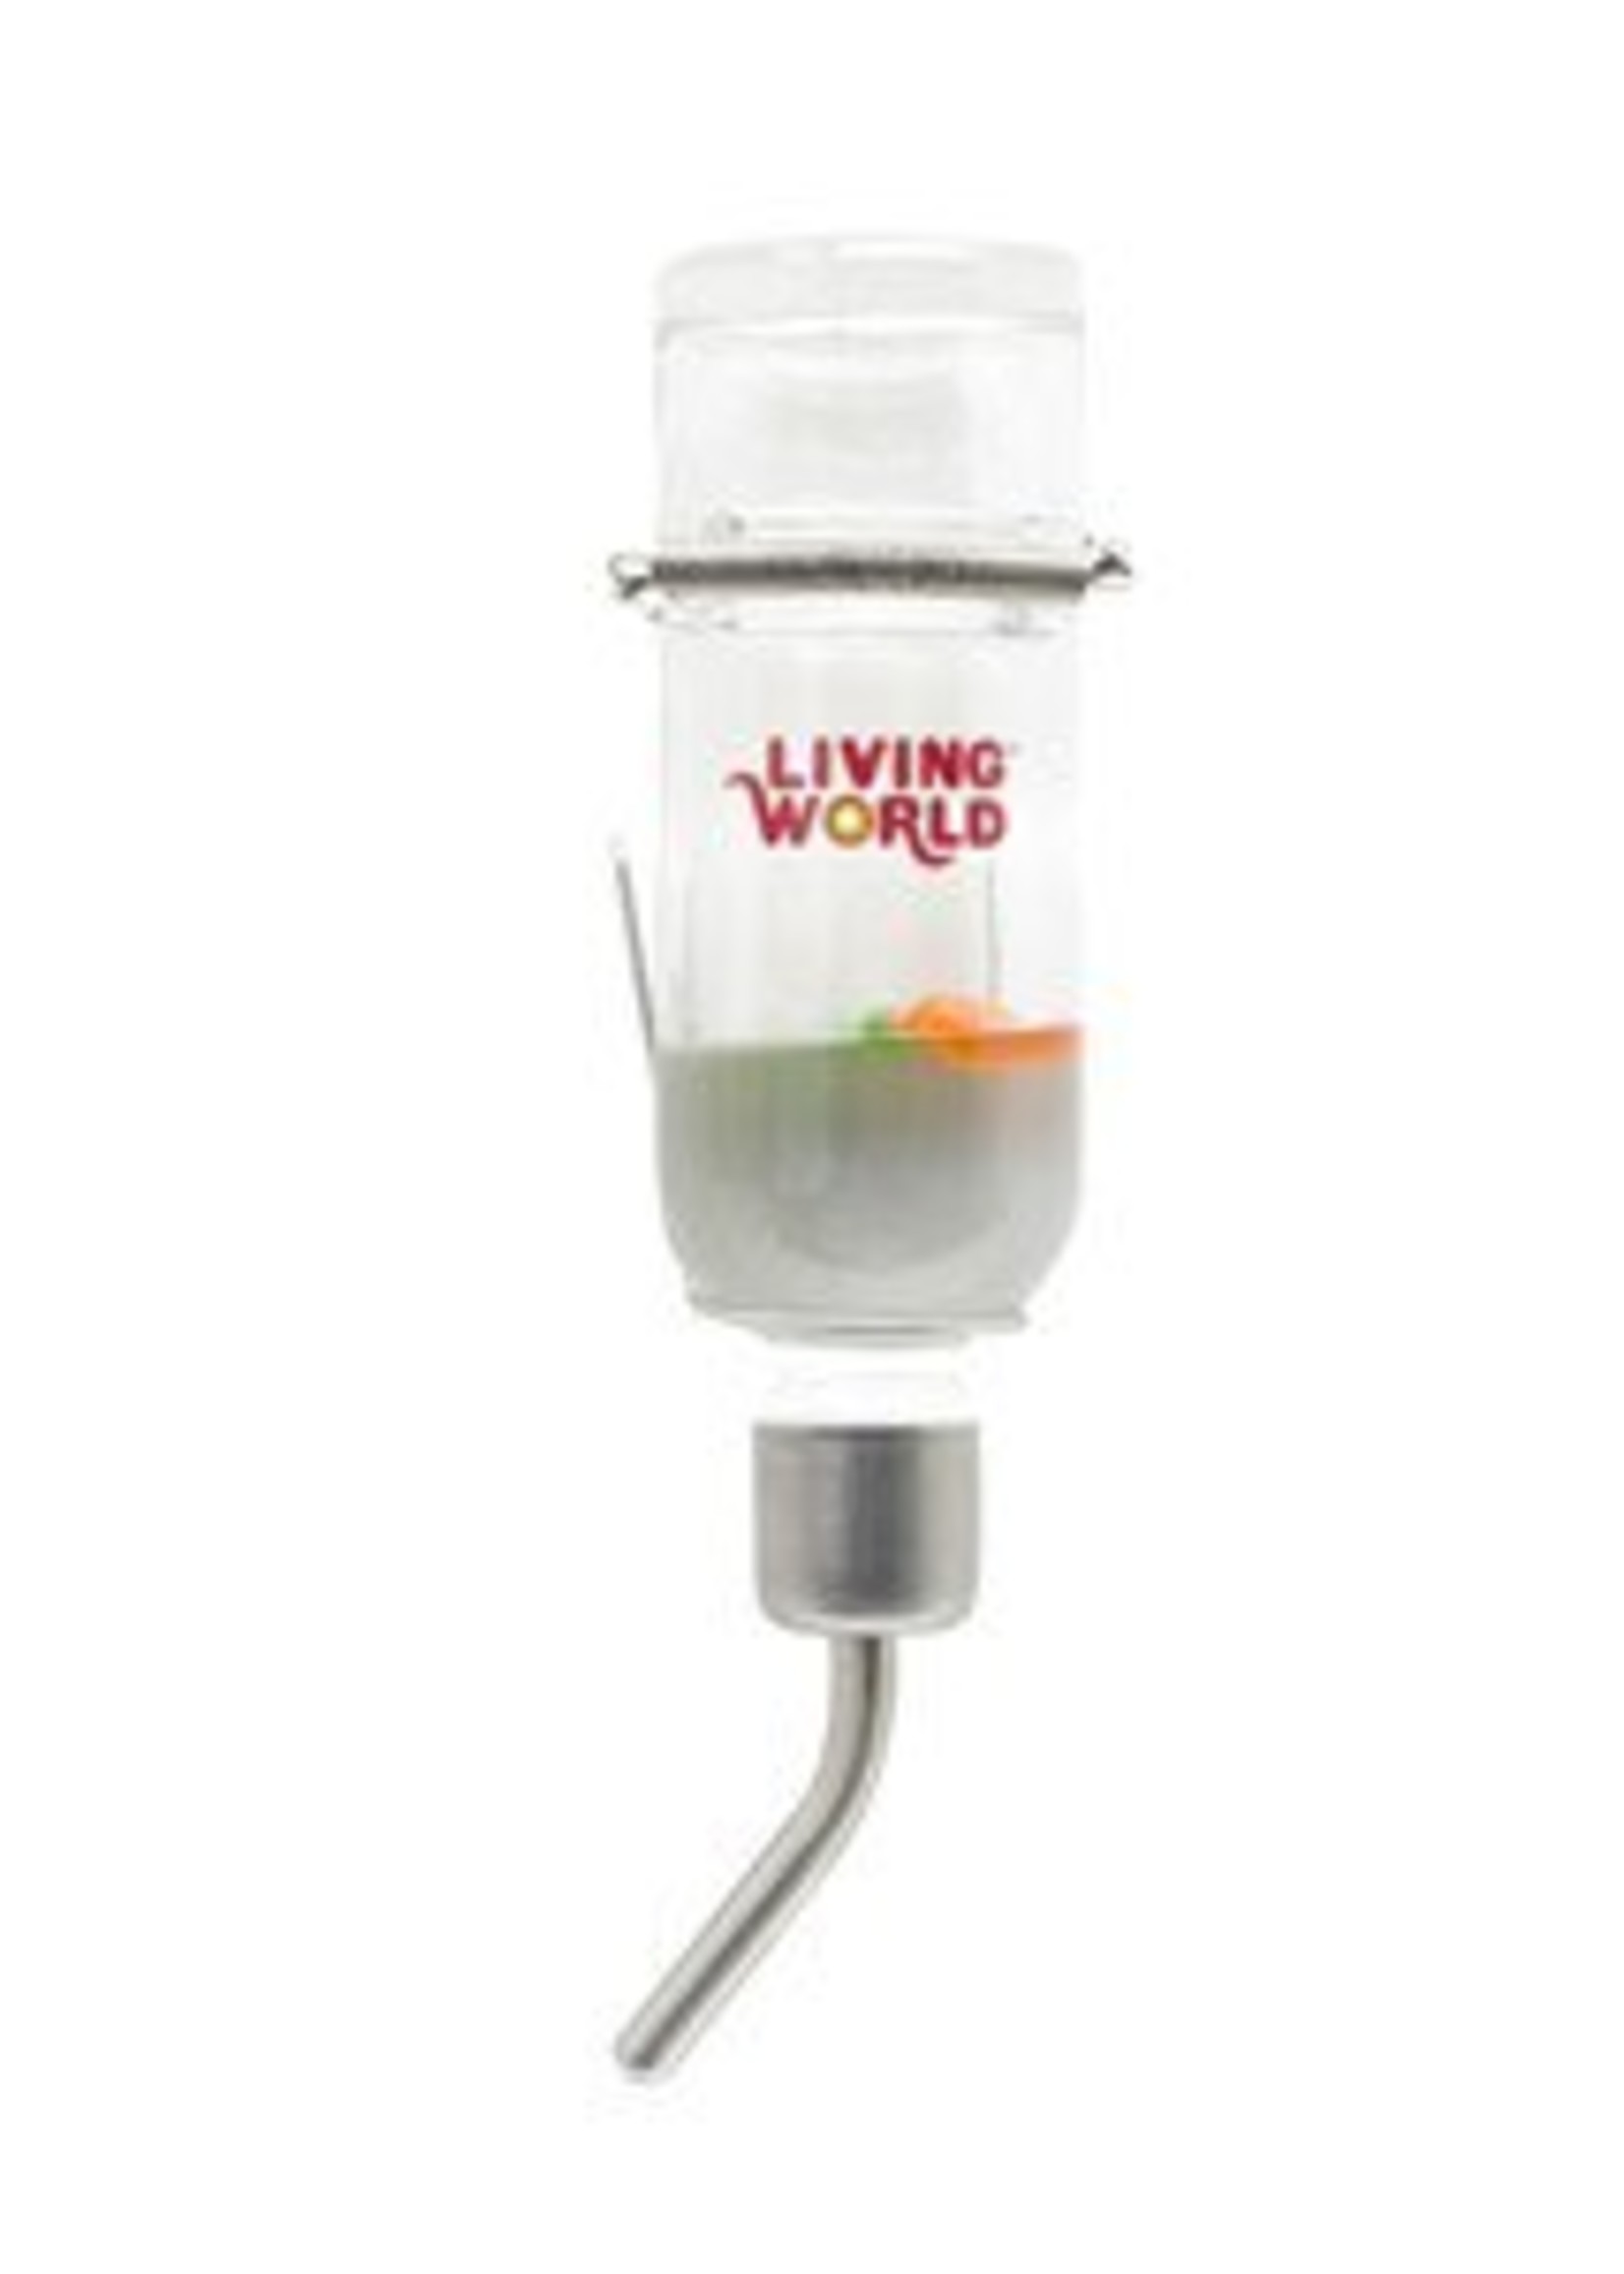 Living World Living World Eco + Water Bottle - 26oz